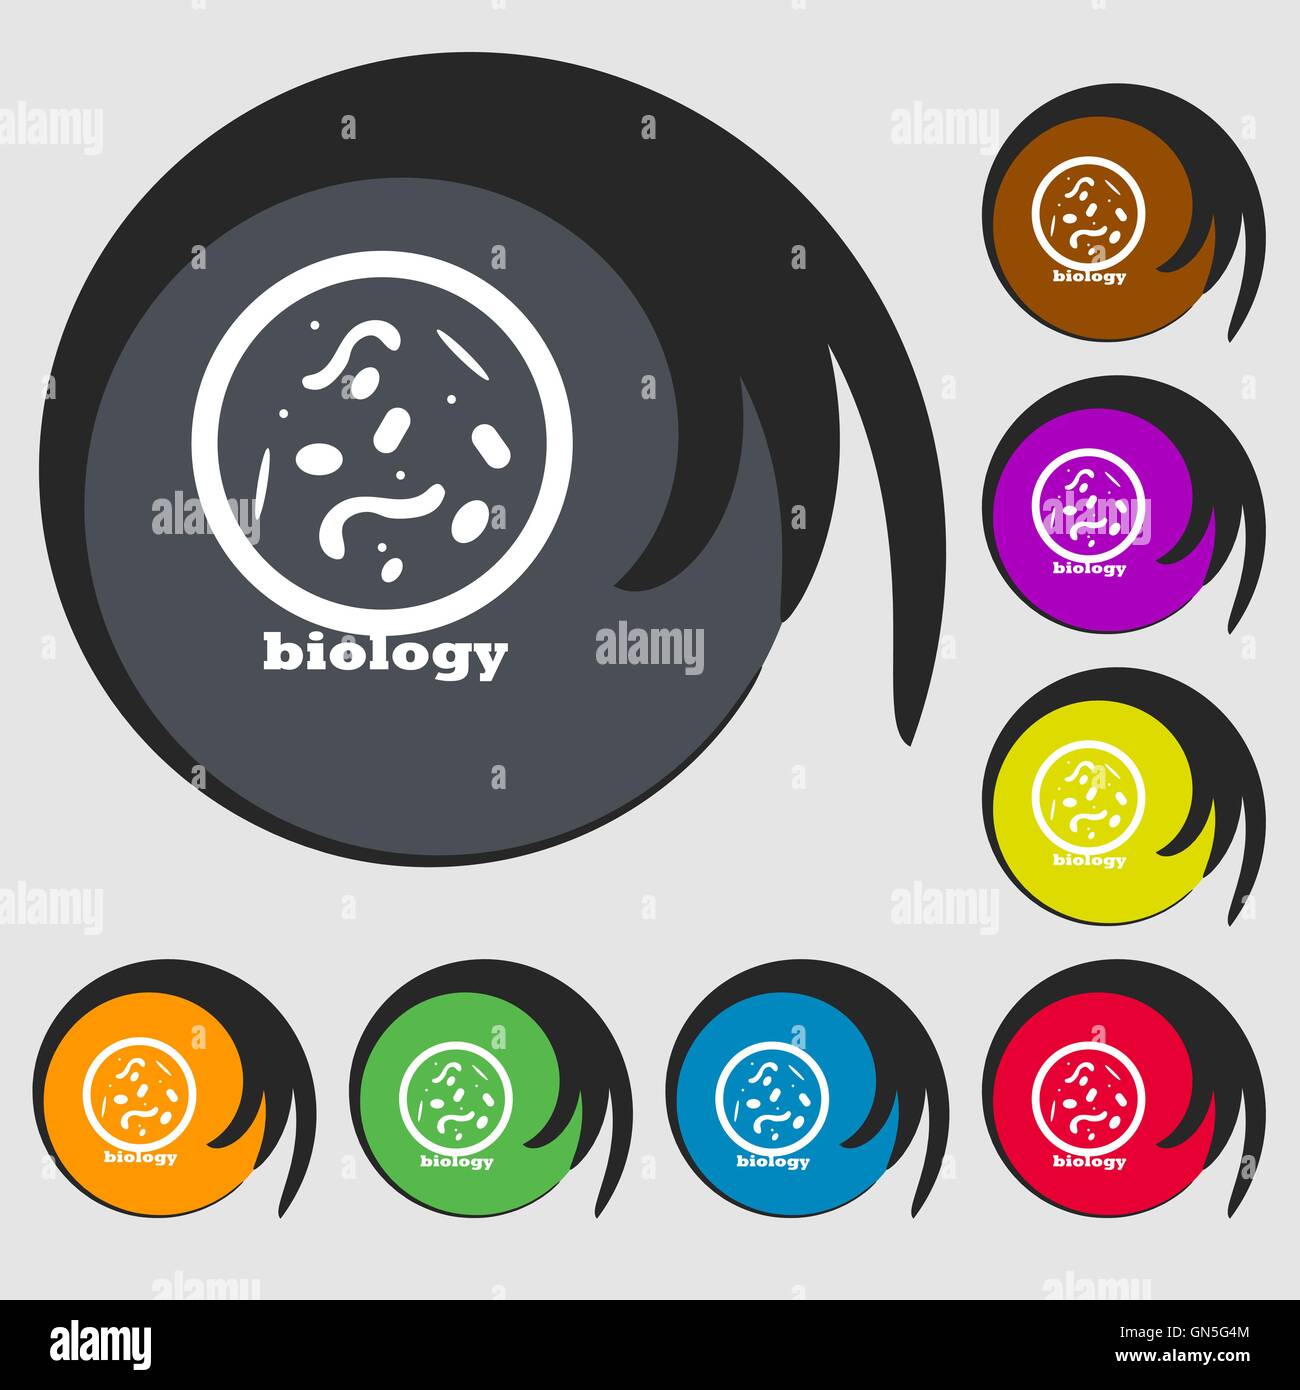 Les bactéries et virus disease, biologie des cellules au microscope. Symboles sur huit boutons de couleur. Vector Illustration de Vecteur